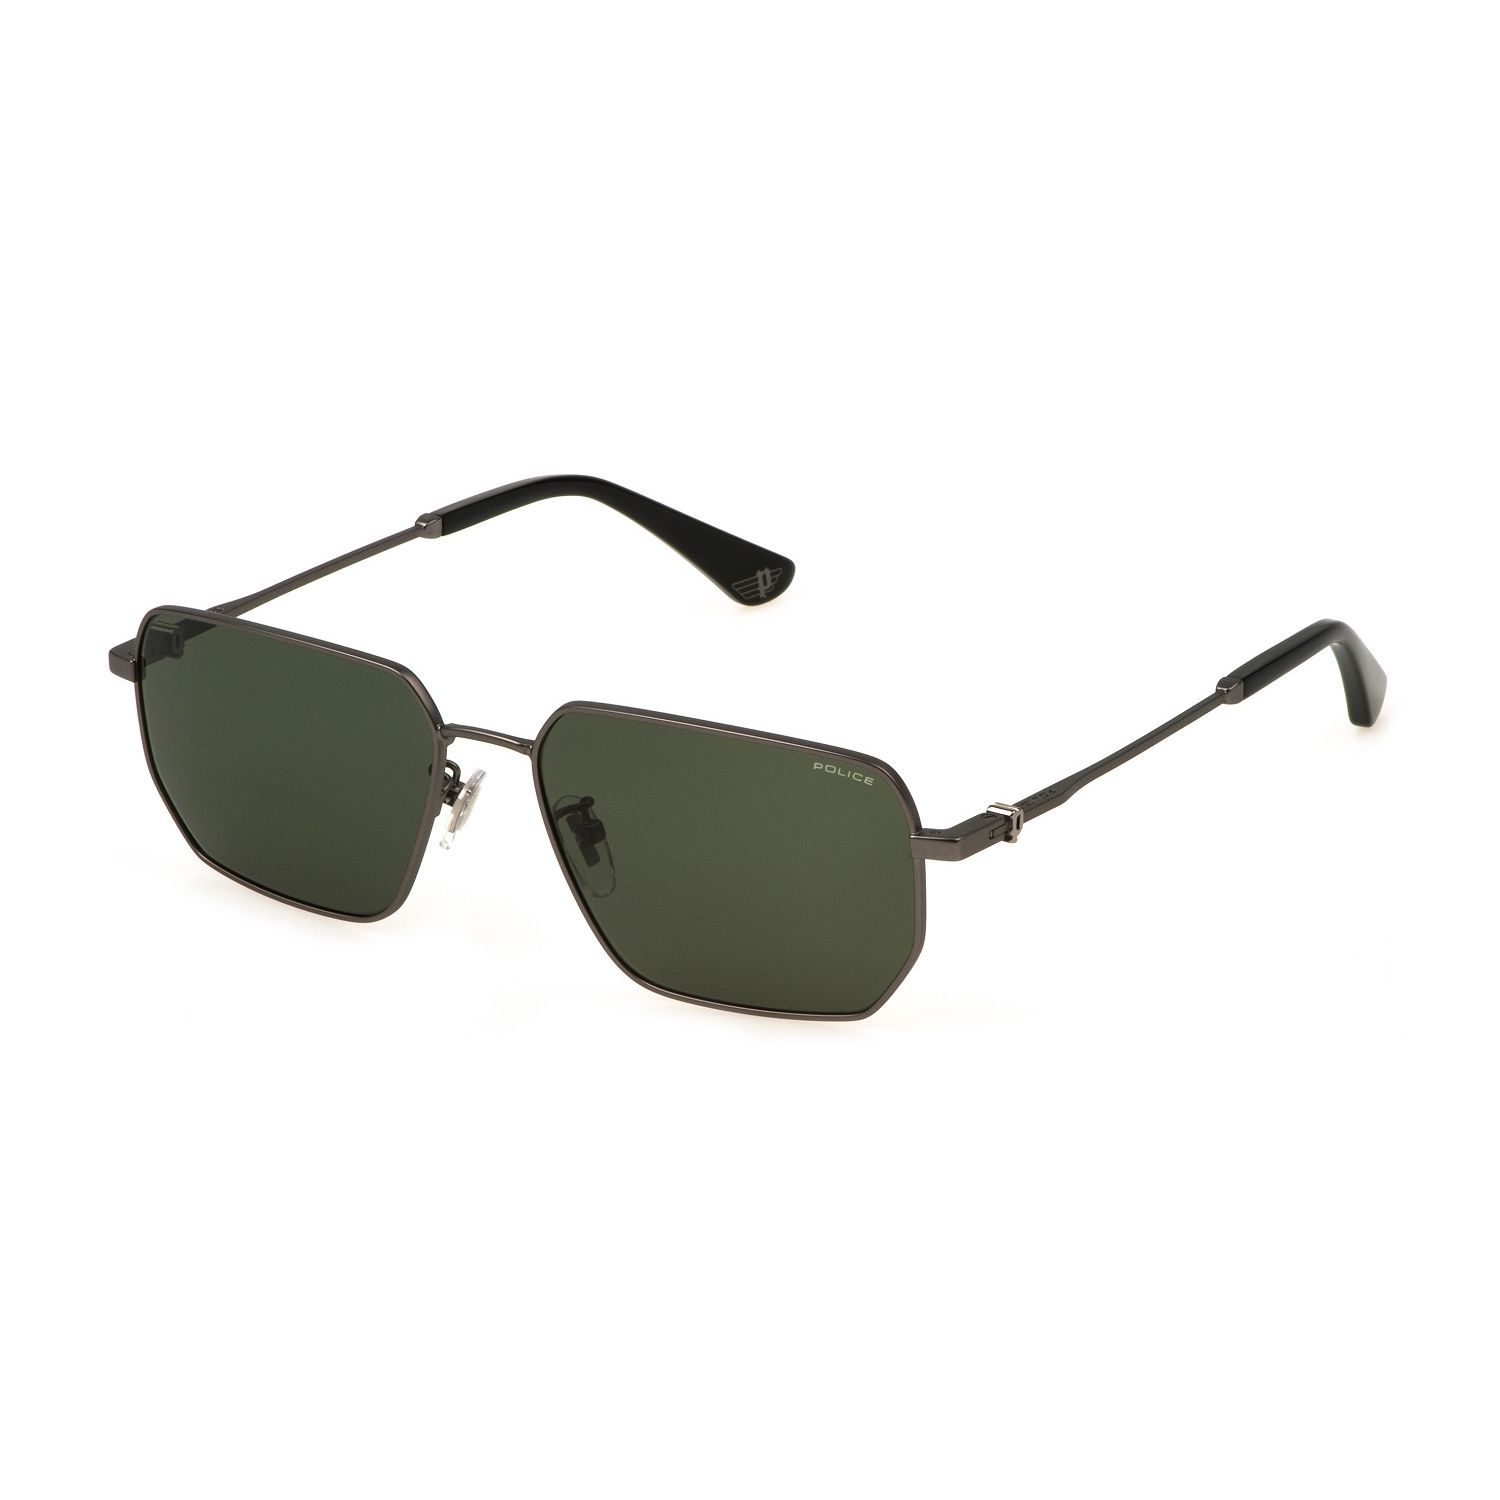 SPLN40M Geometric Sunglasses E56K - size 57